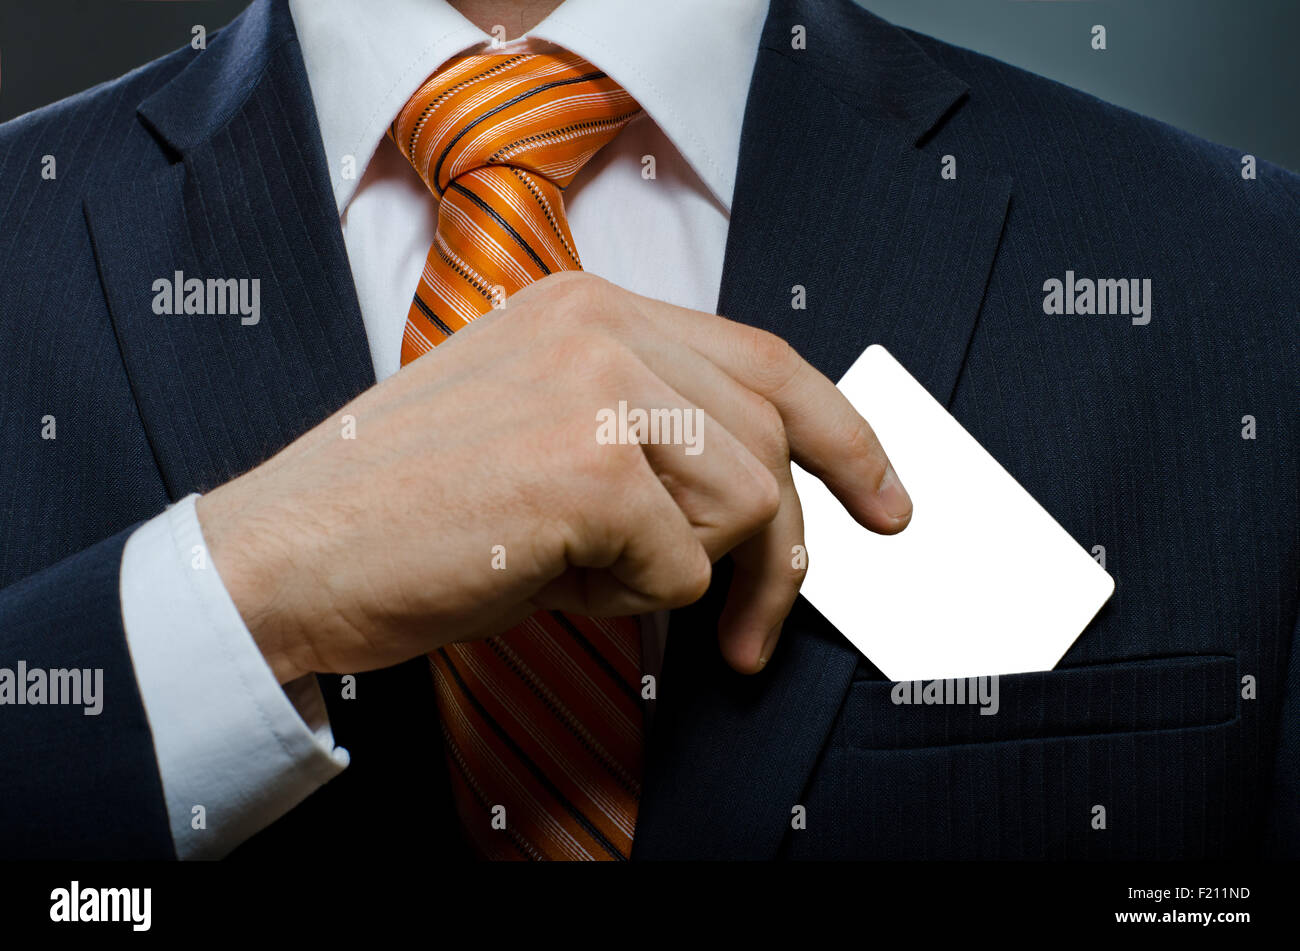 Empresario de traje negro y corbata naranja poner o sacar la tarjeta de crédito en el bolsillo Foto de stock